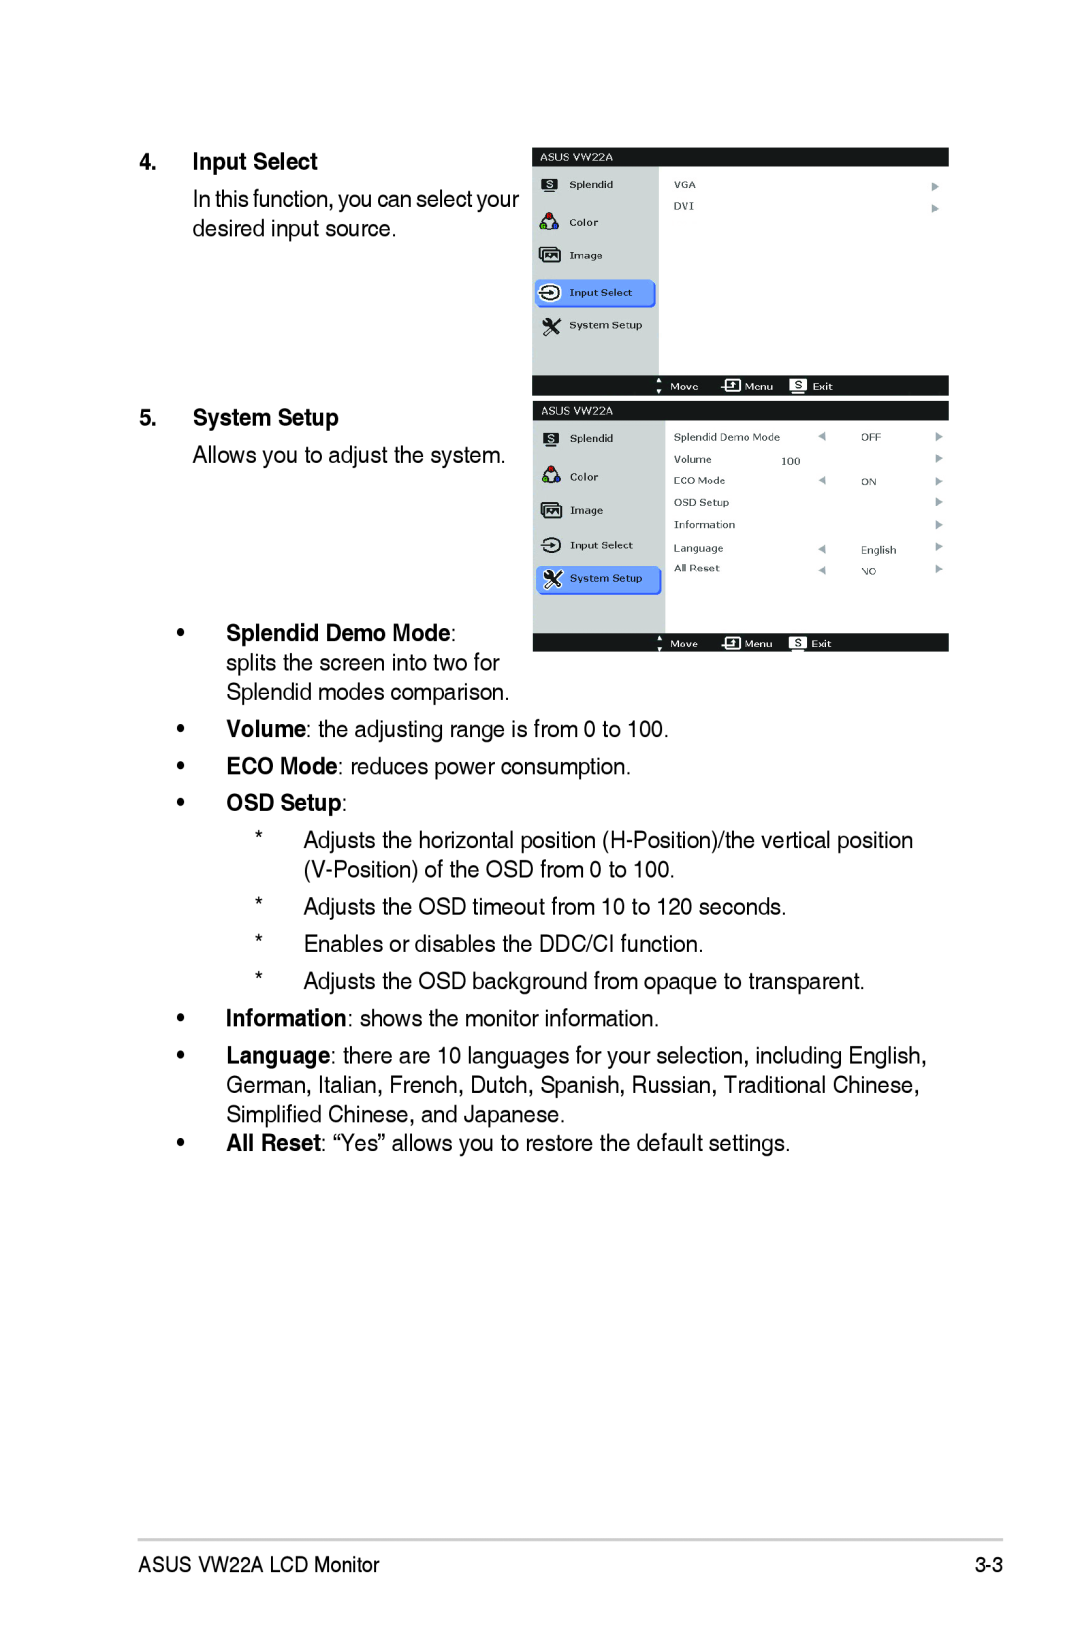 Asus VW22ATCSM manual Input Select, System Setup, OSD Setup 